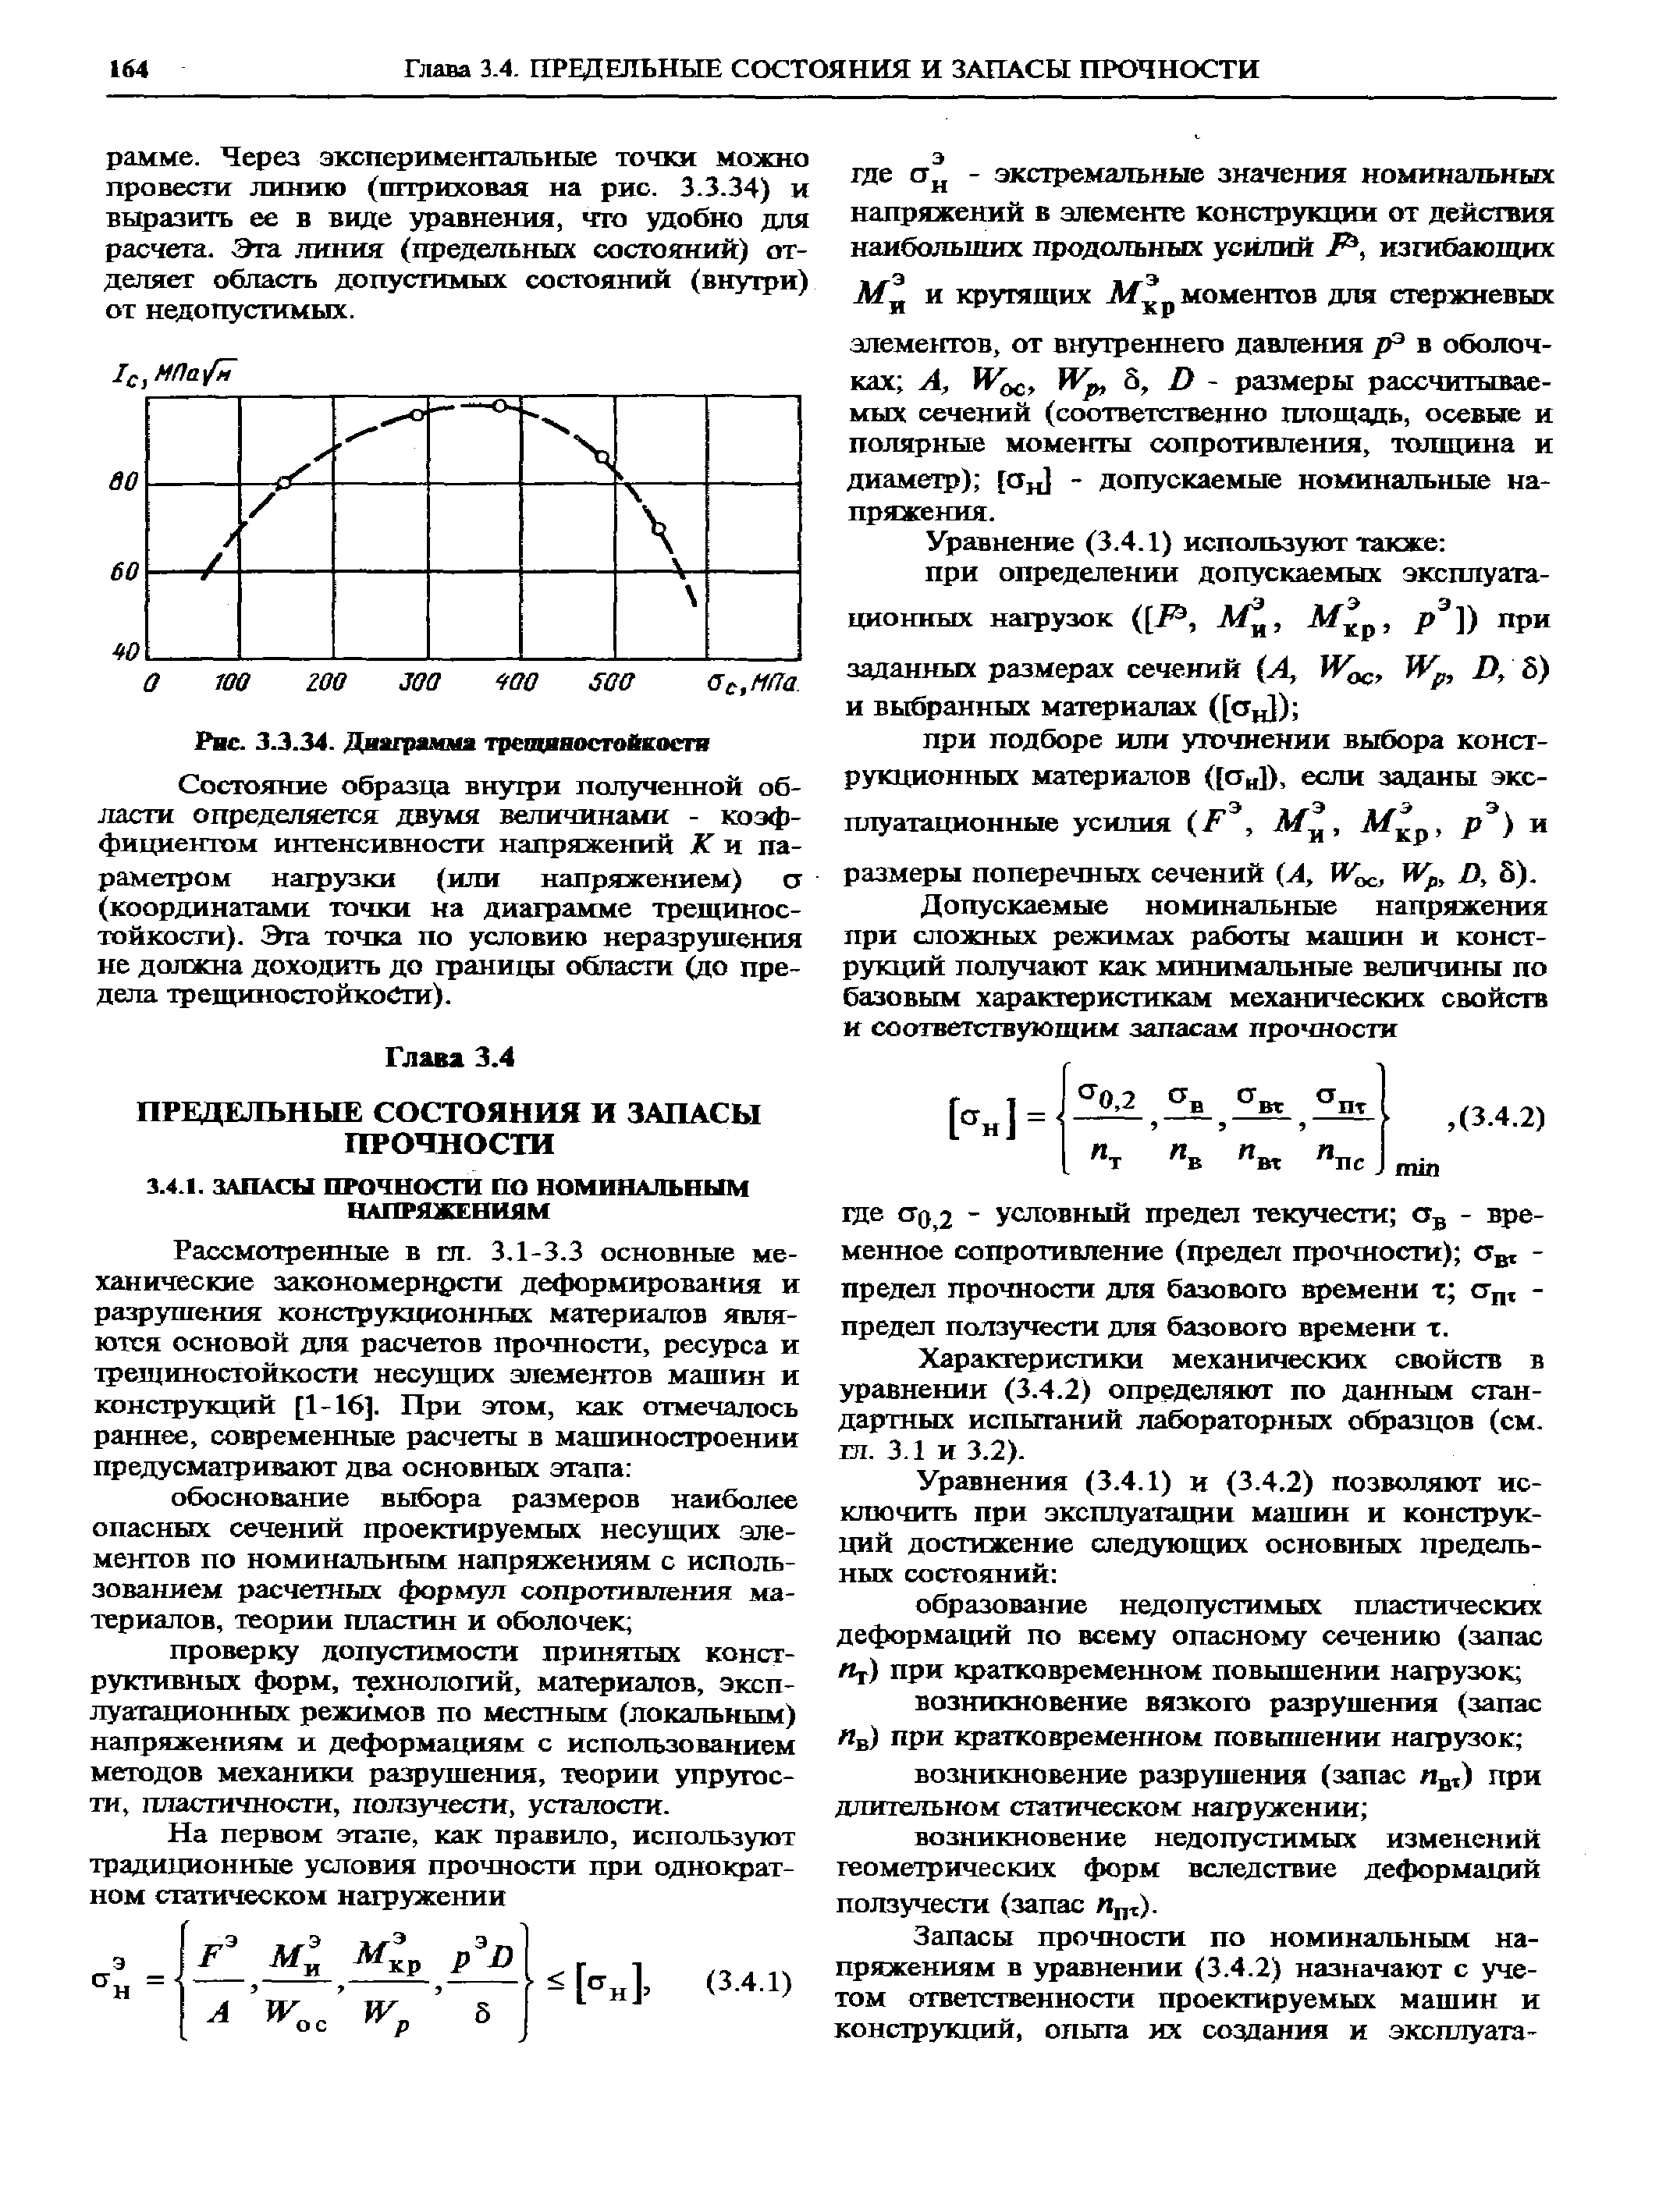 Характеристики механических свойств в уравнении (3.4.2) определяют по данным стандартных испытаний лабораторных образцов (см. тл. 3.1 и 3.2).
